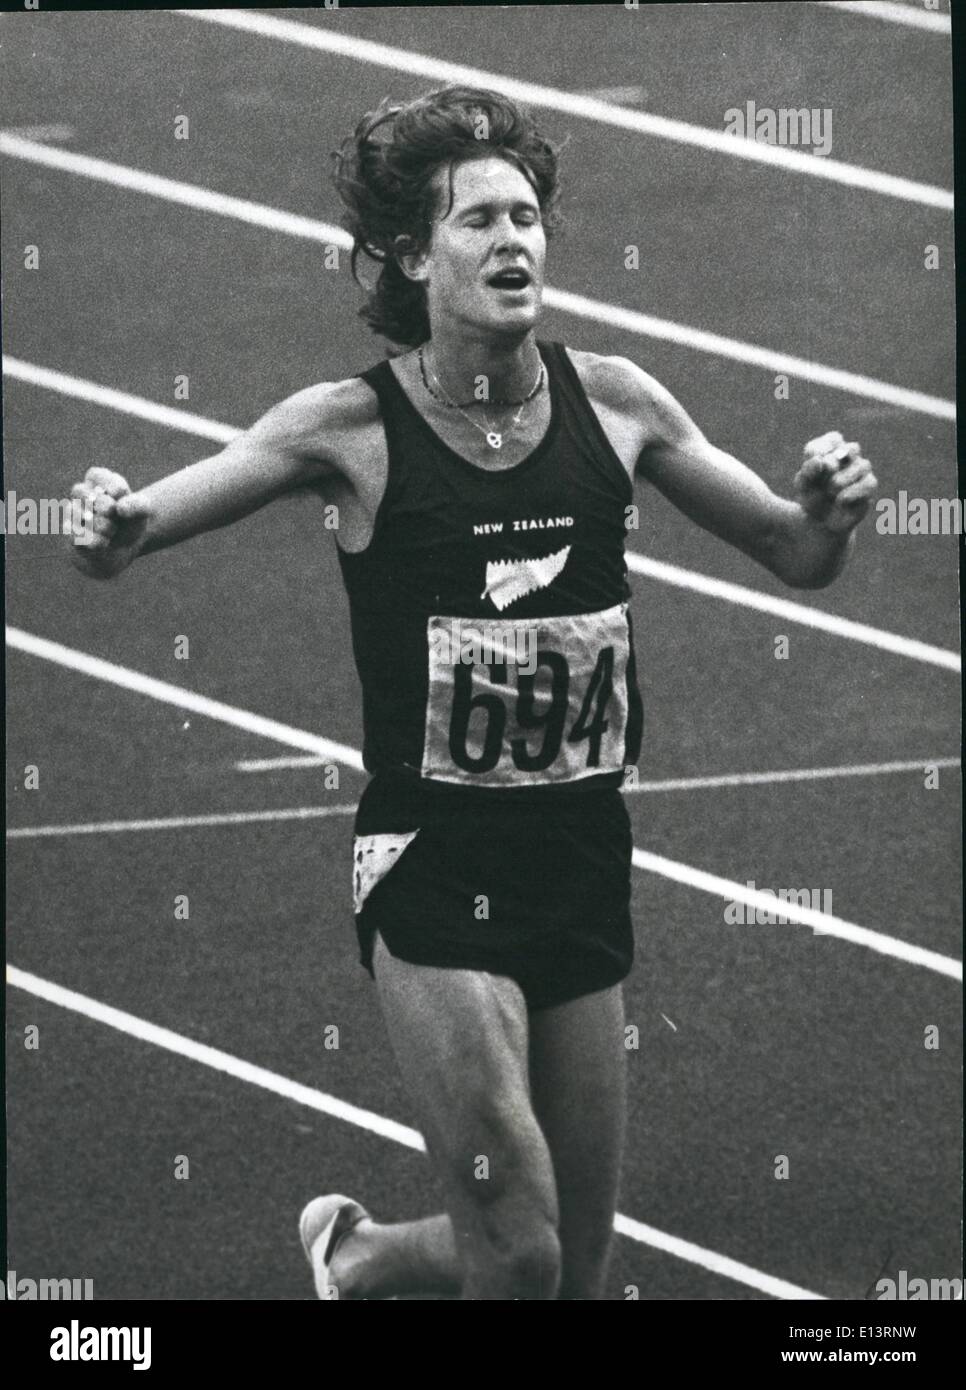 27 mars 2012 - John Walker remporte la finale 1500 mètres : Photo montre John Walker de la Nouvelle-Zélande vu remporter la finale du 1500 mètres dans les Jeux olympiques de Montréal. Banque D'Images